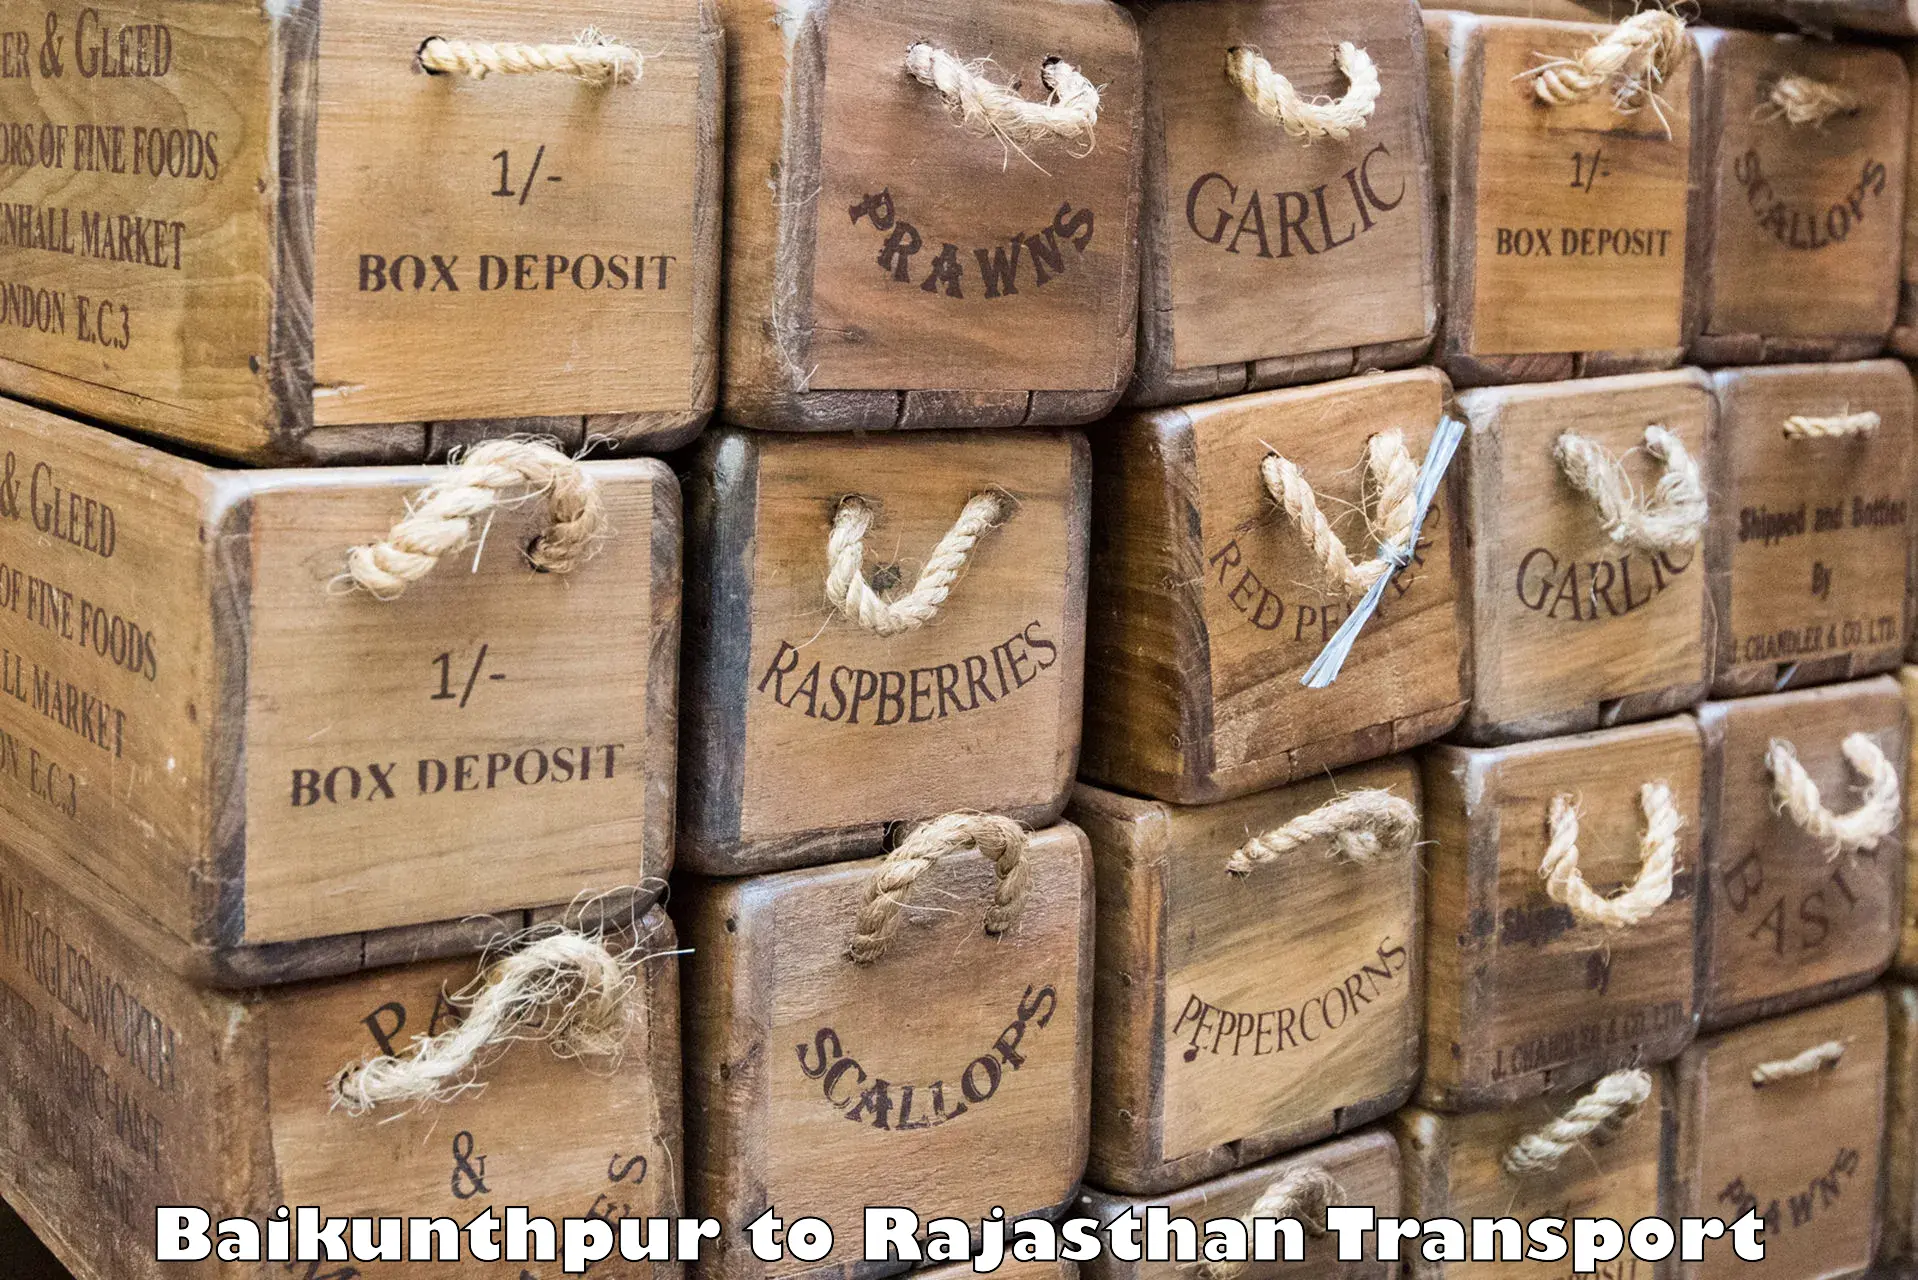 Road transport online services Baikunthpur to Fatehpur Sikar